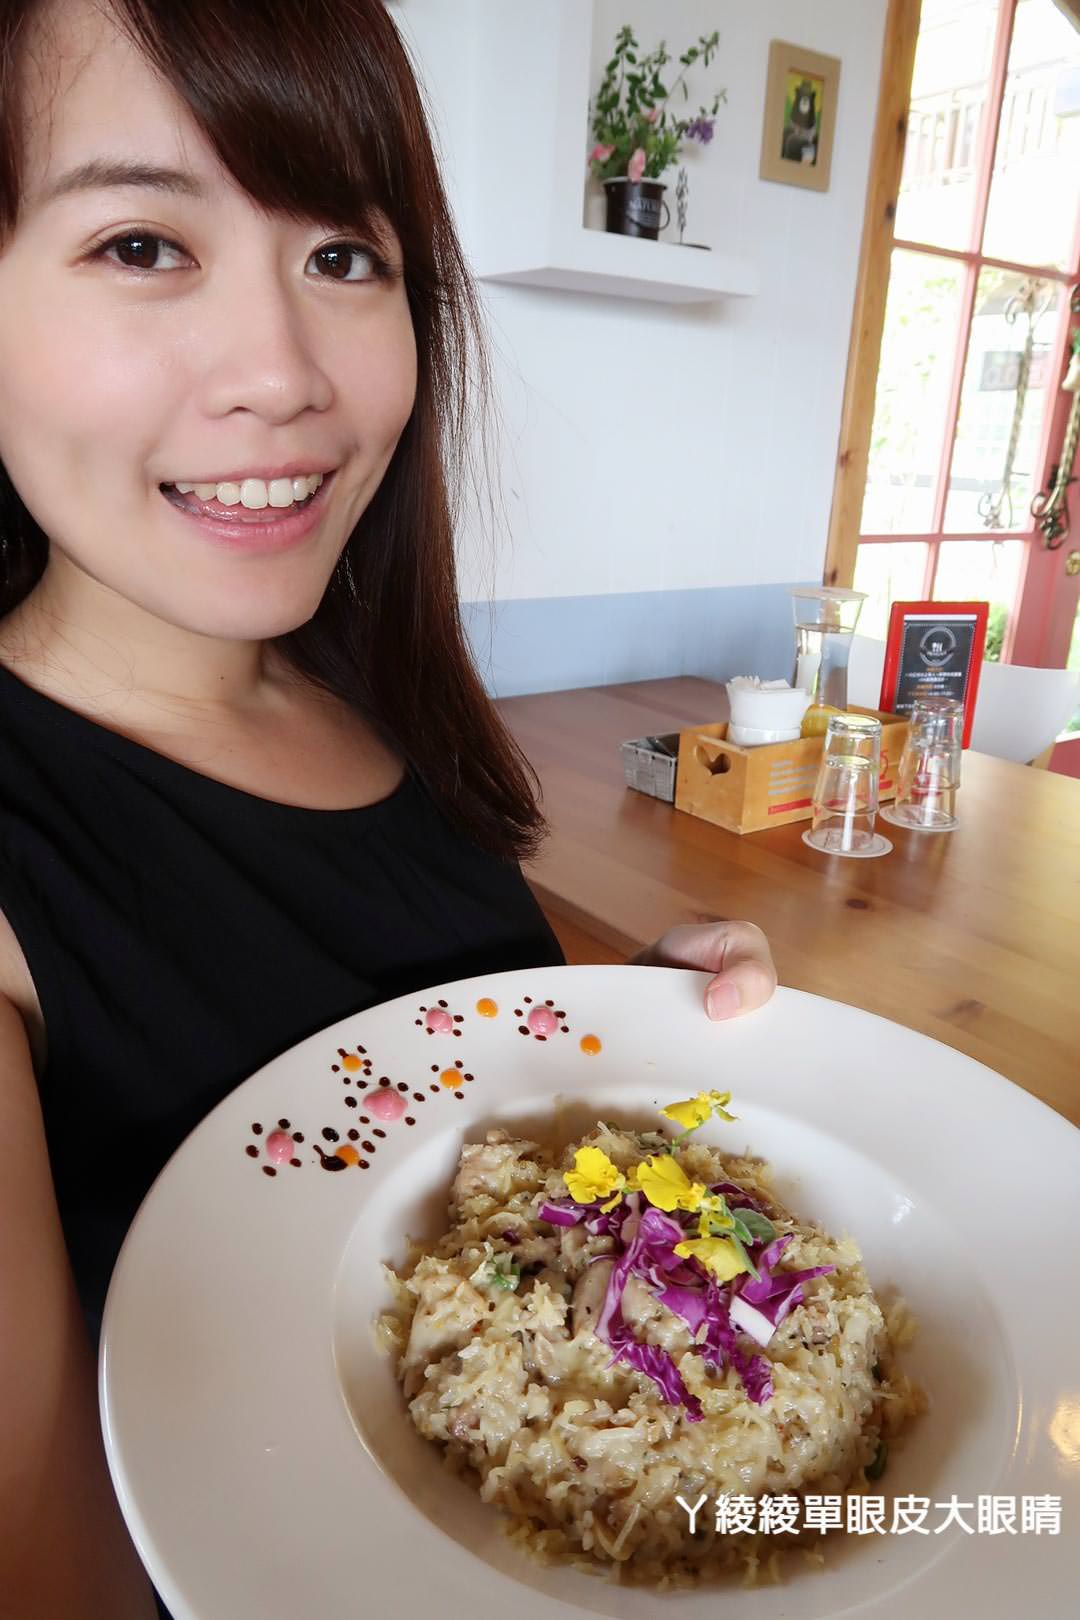 新竹IG打卡熱門旅遊景點、新竹美食餐廳推薦《新埔普羅旺斯小木屋餐廳》